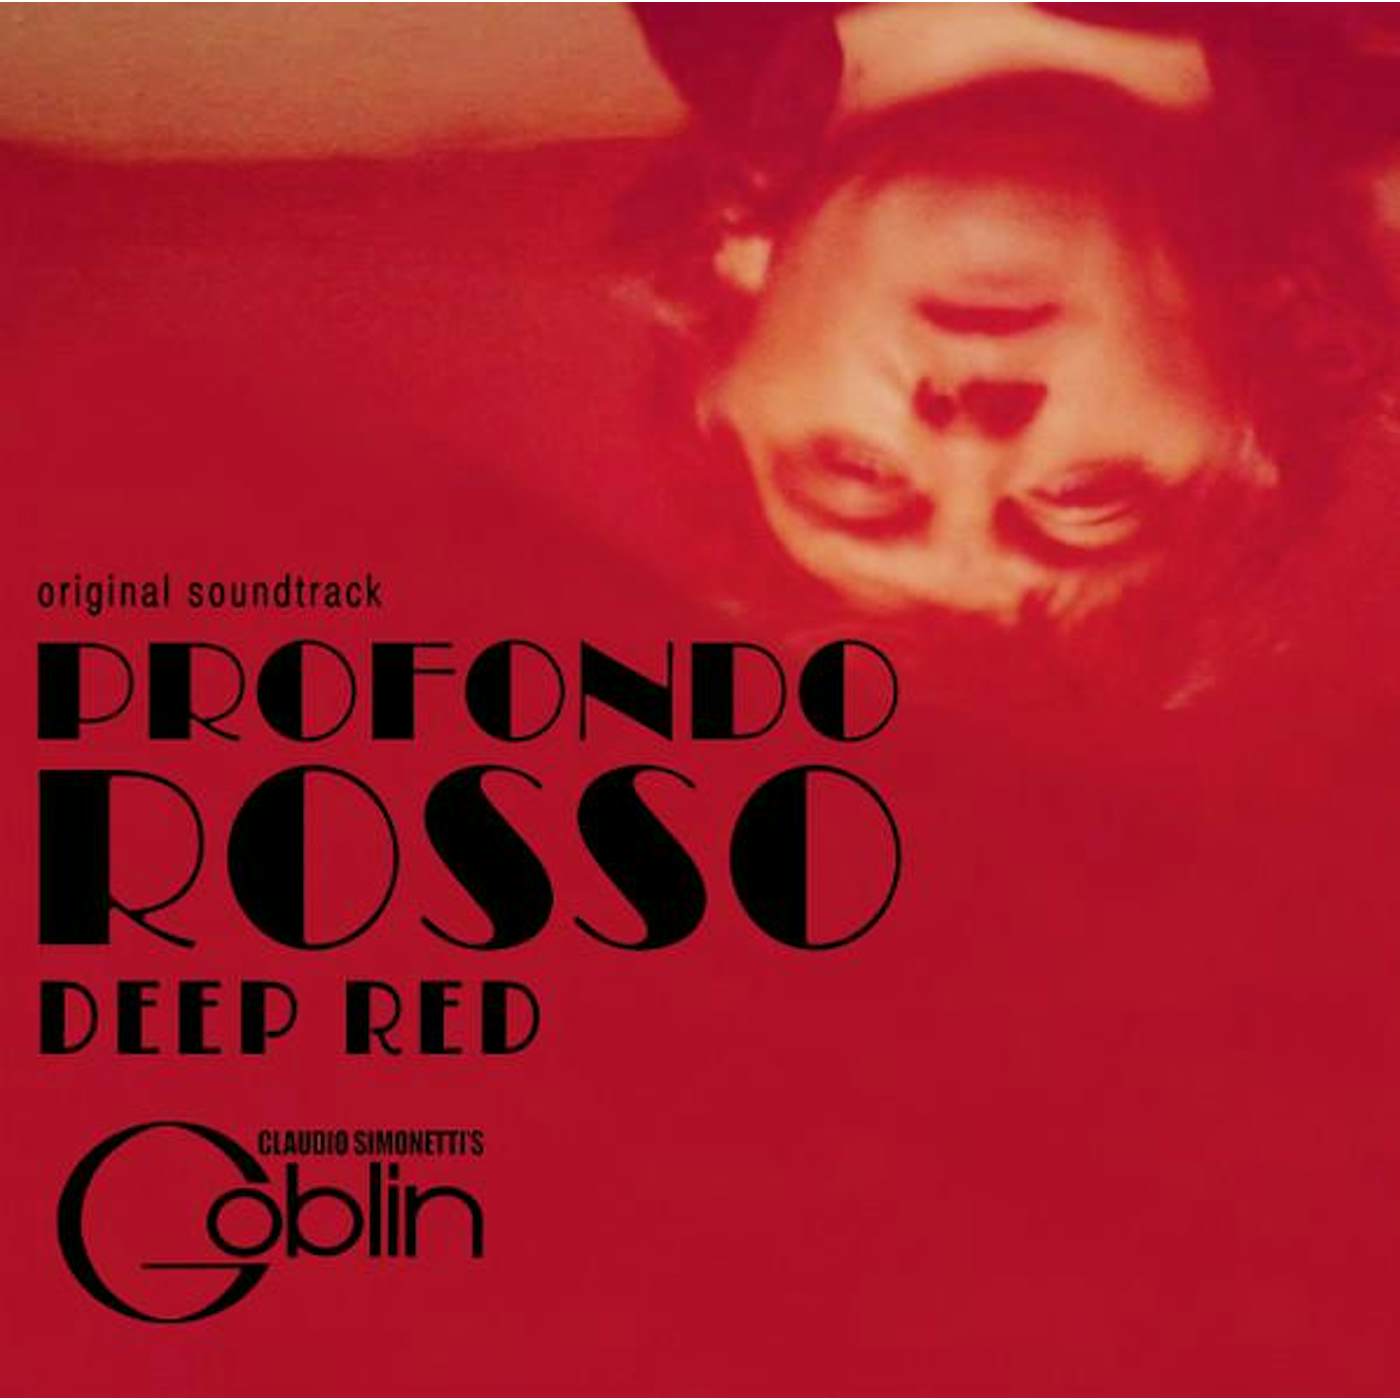 Claudio Simonetti's Goblin DEEP RED / PROFONDO ROSSO Original Soundtrack (40TH ANNIVERSARY EDITION) Vinyl Record